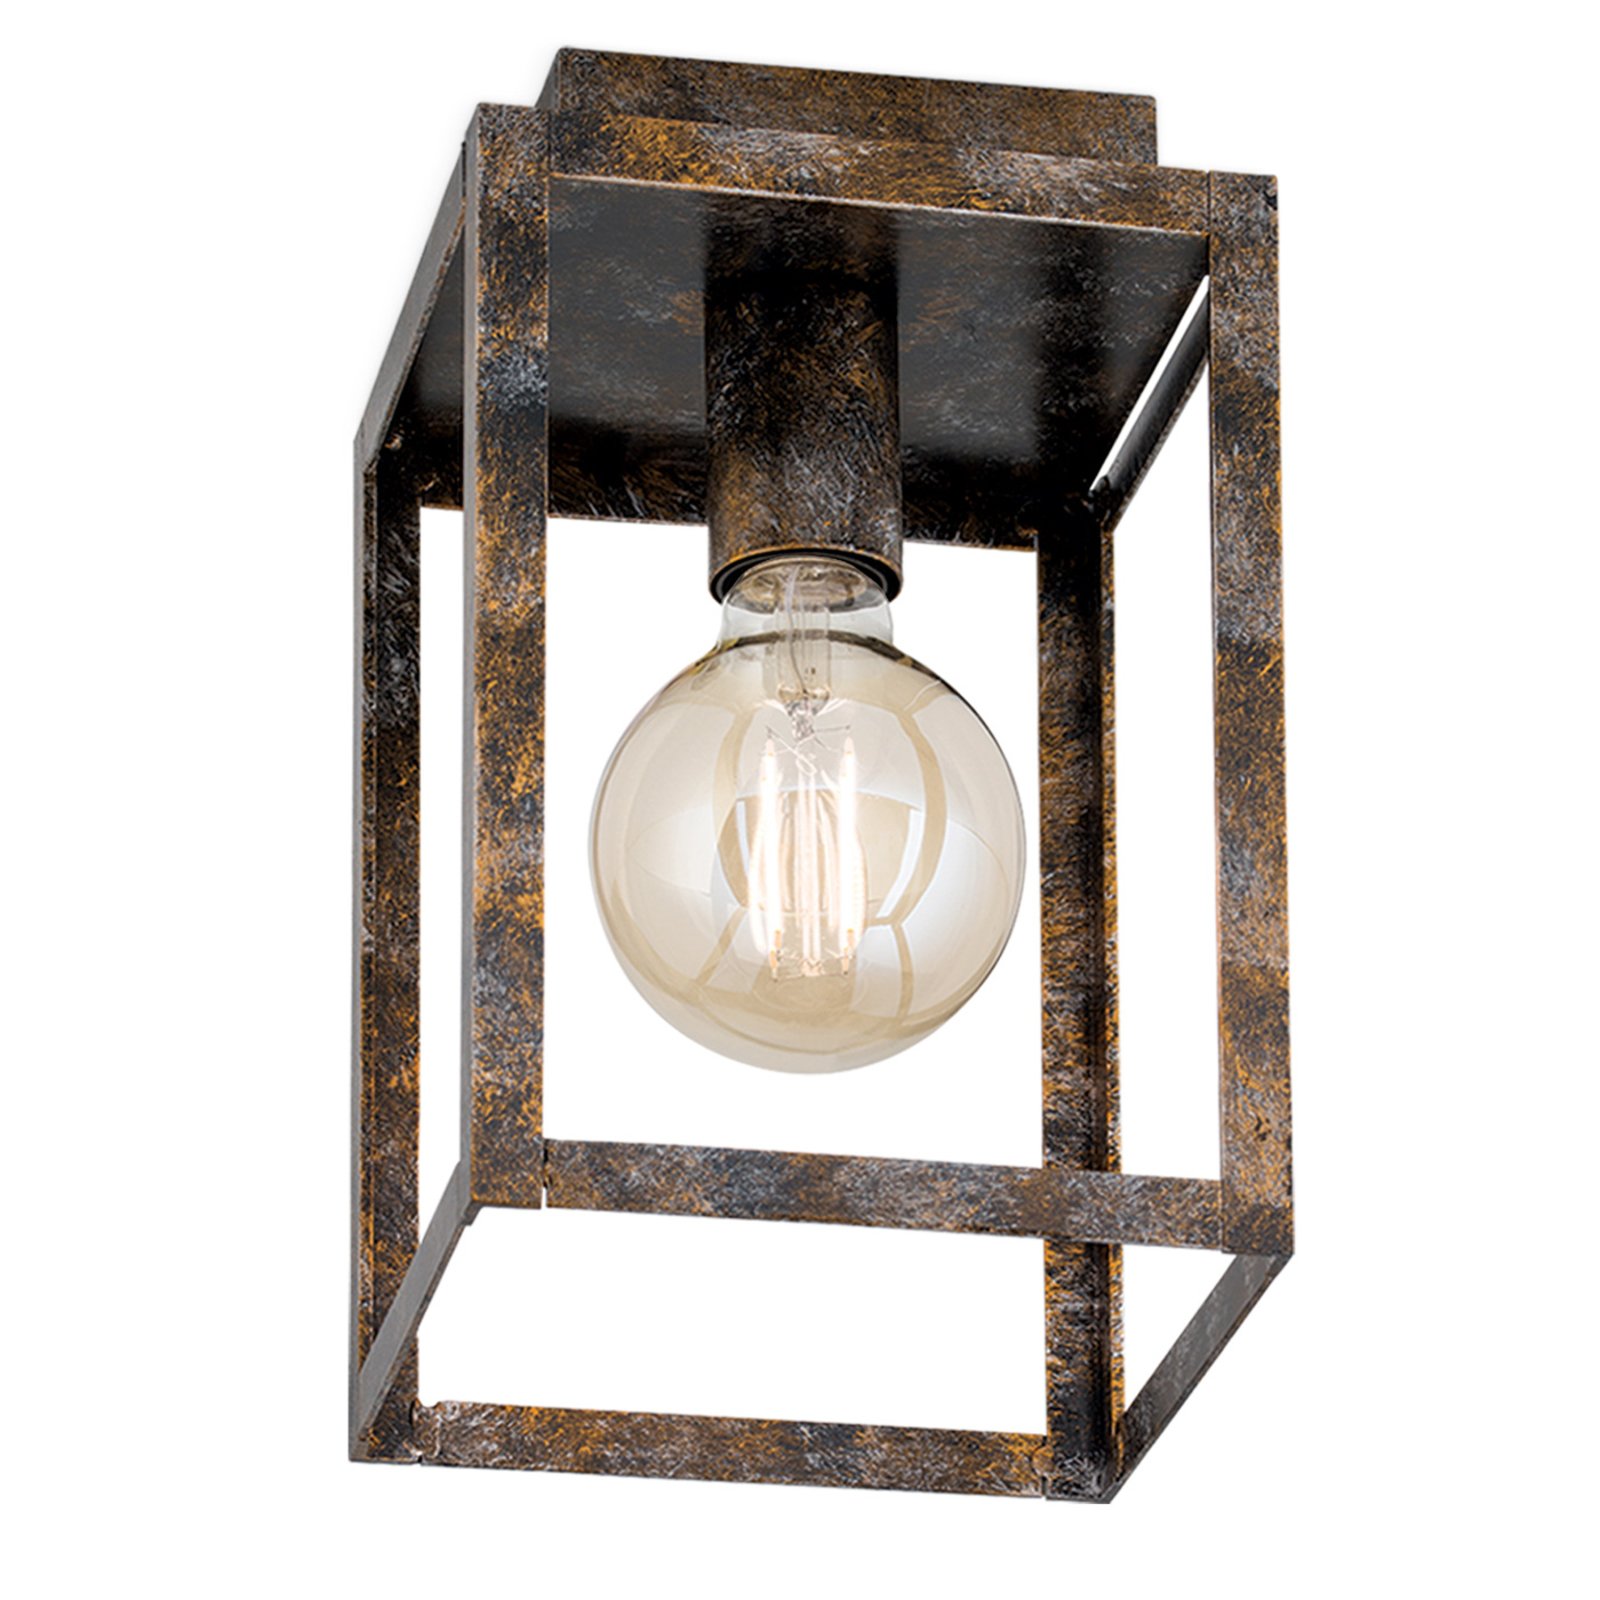 Cage mennyezeti lámpa vintage megjelenésben